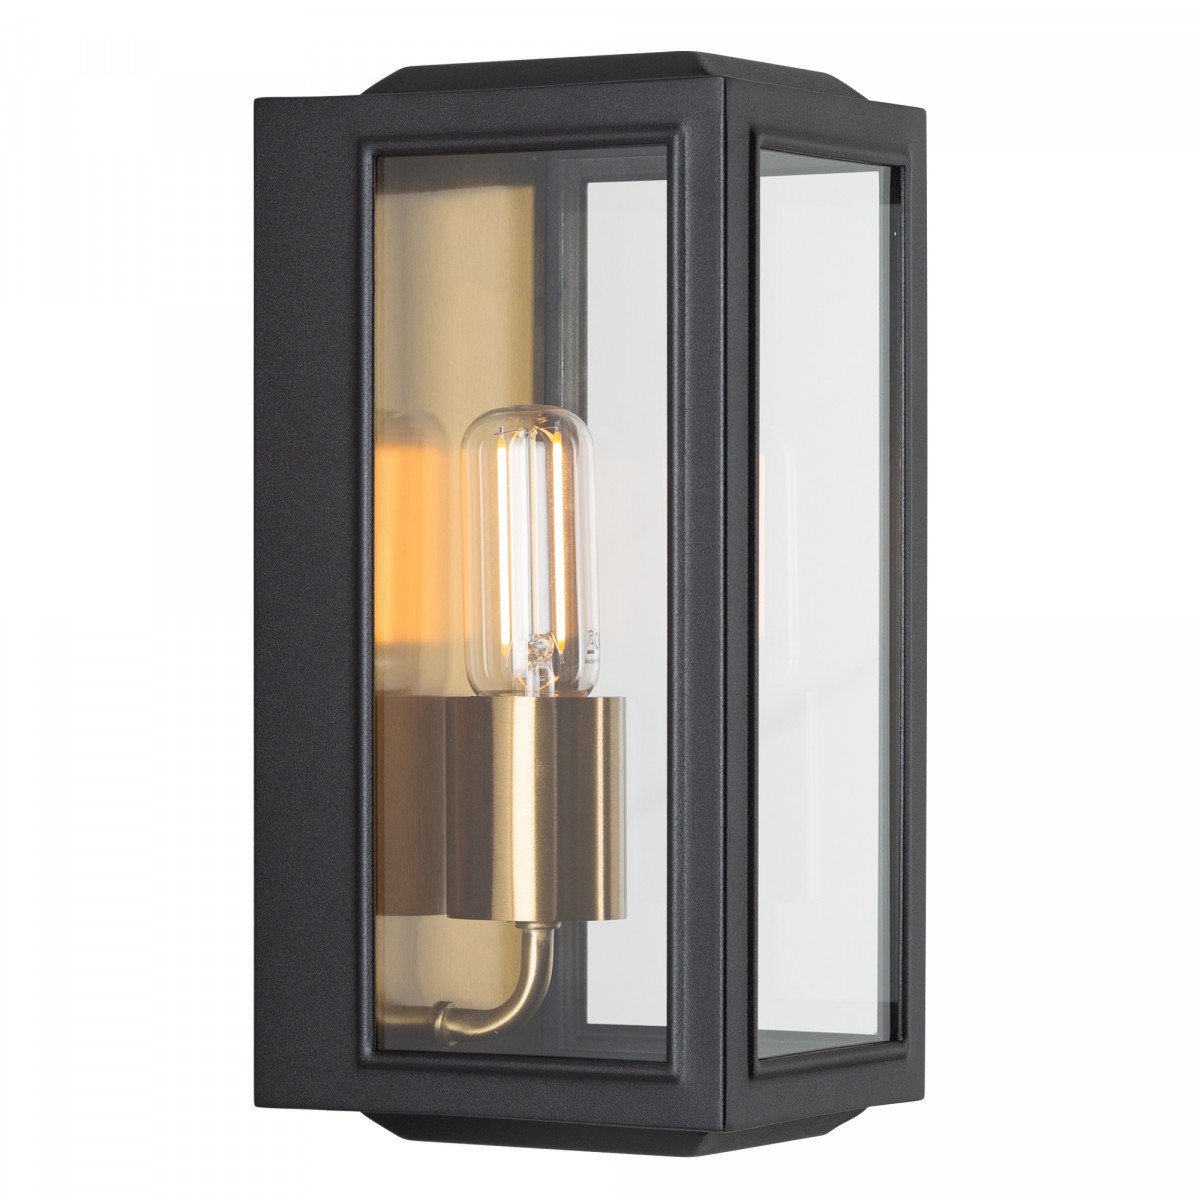 Zwart- en koperkleurige wandlamp voor buiten met robuuste vervaardiging buitenlamp Residence